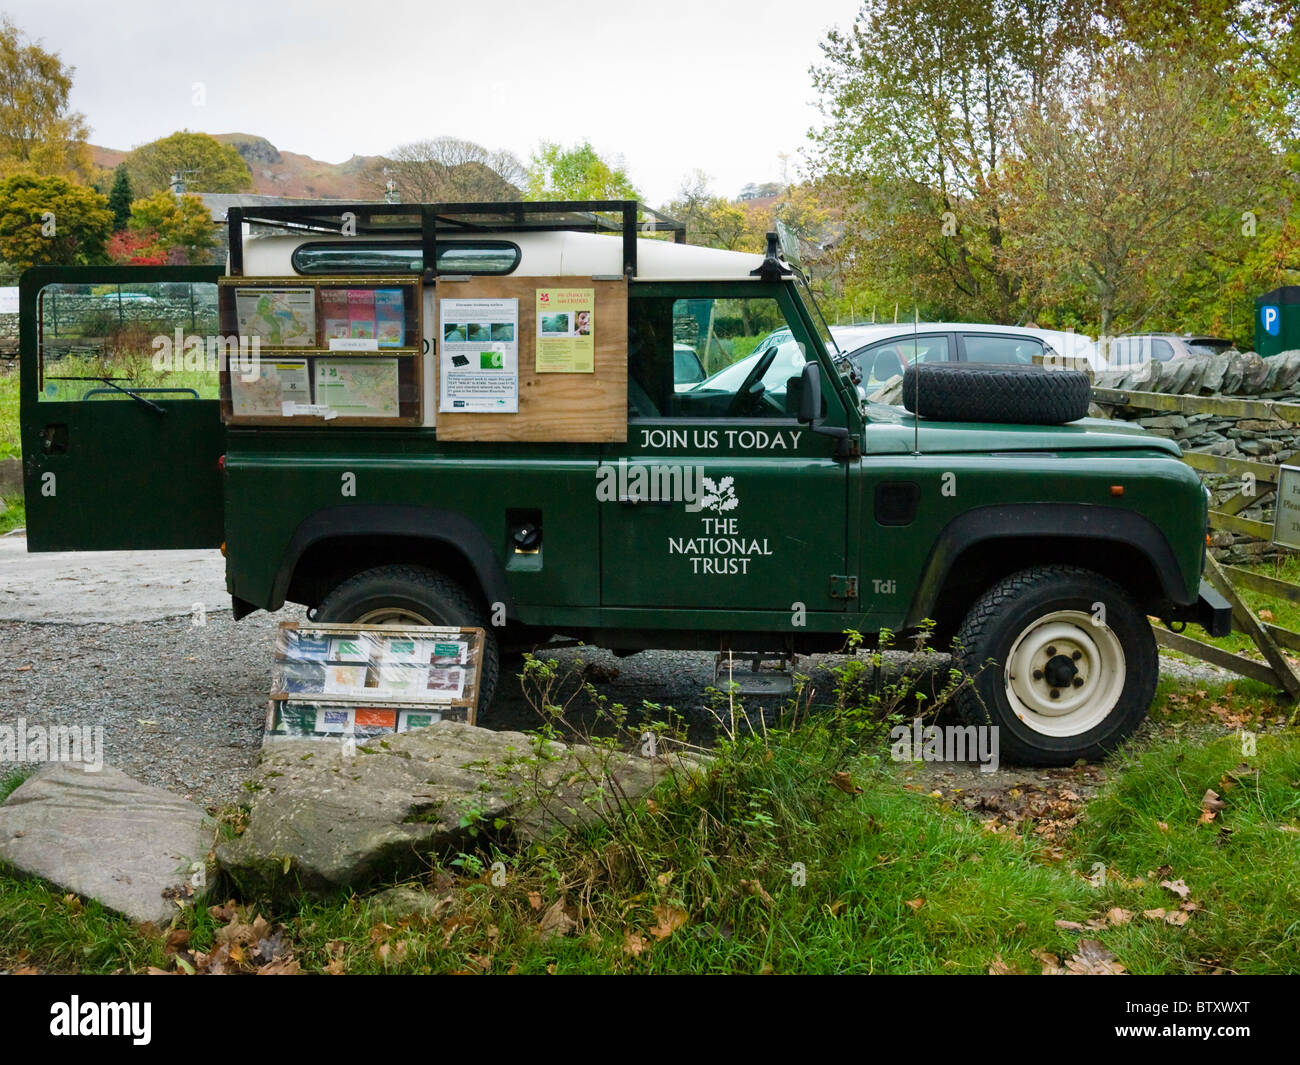 Un National Trust Land Rover Defender dans un parking à Lake Road dans le Parc National de Lake District avec un affichage pour recruter de nouveaux nouveaux membres. Banque D'Images